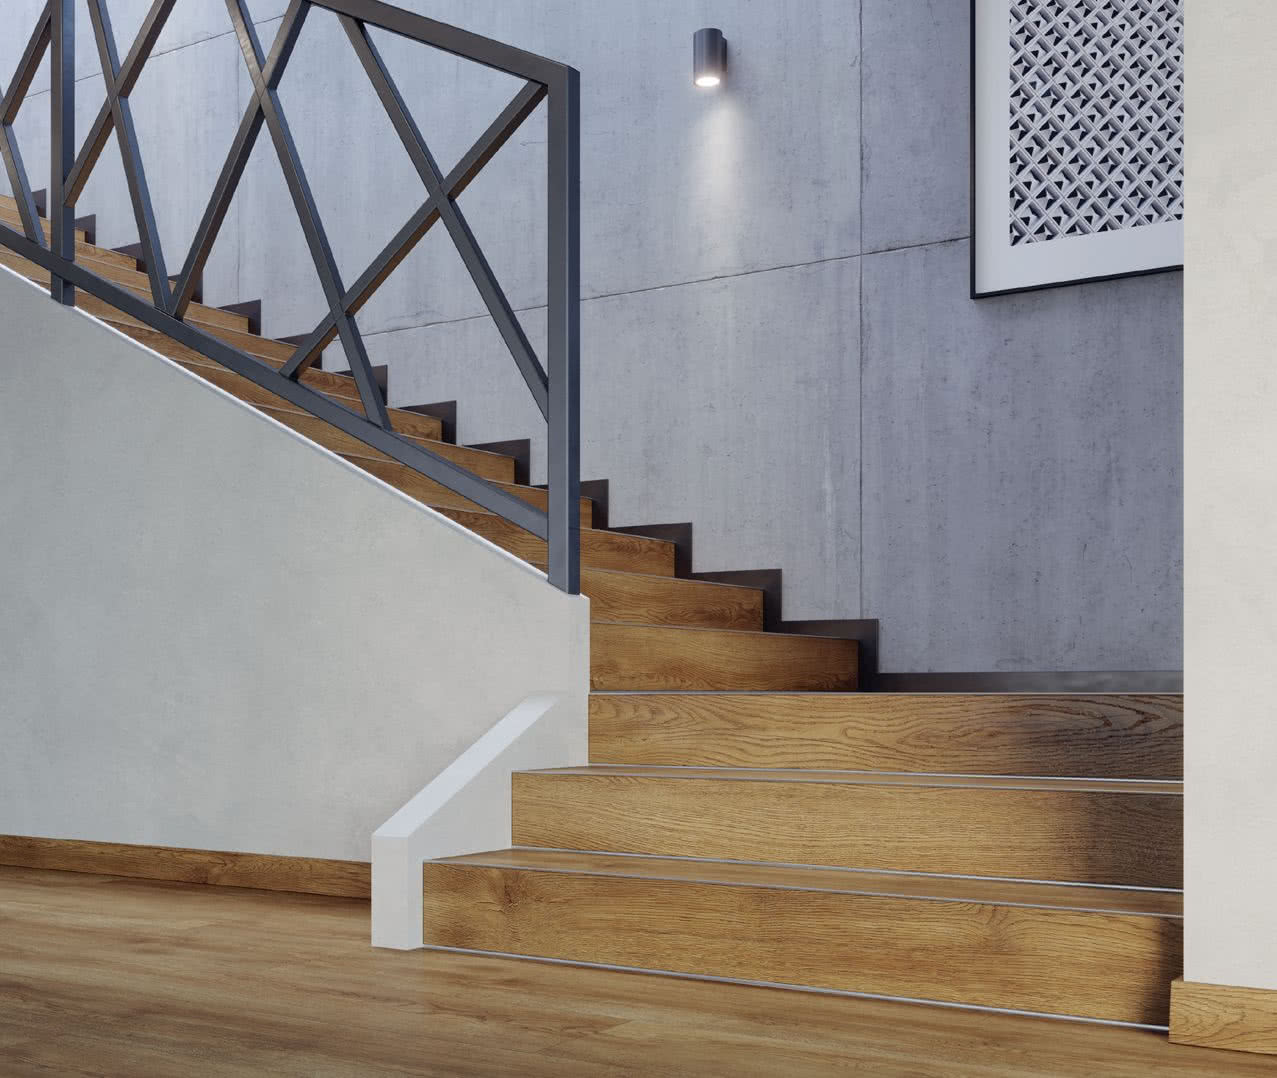 Panele winylowe można układać nie tylko na podłogach, ale też na schodach